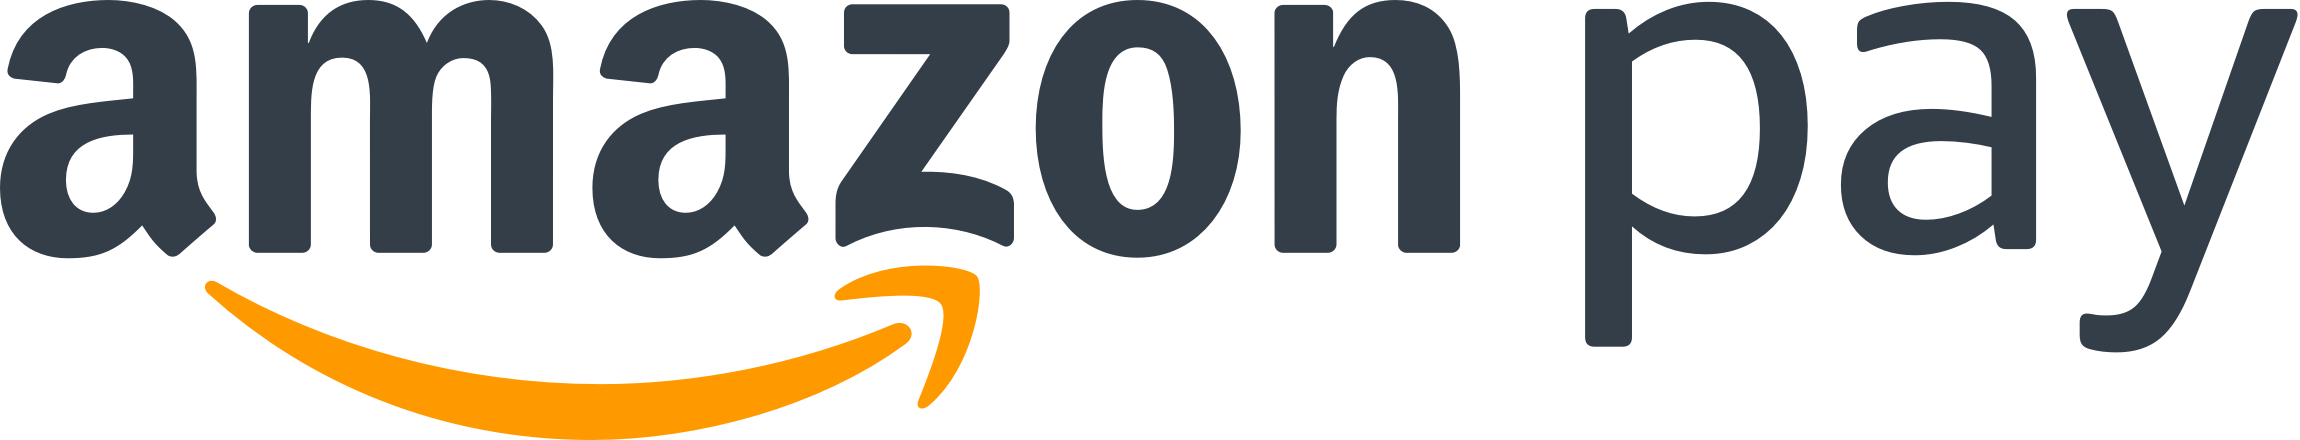 AmazonPay決済